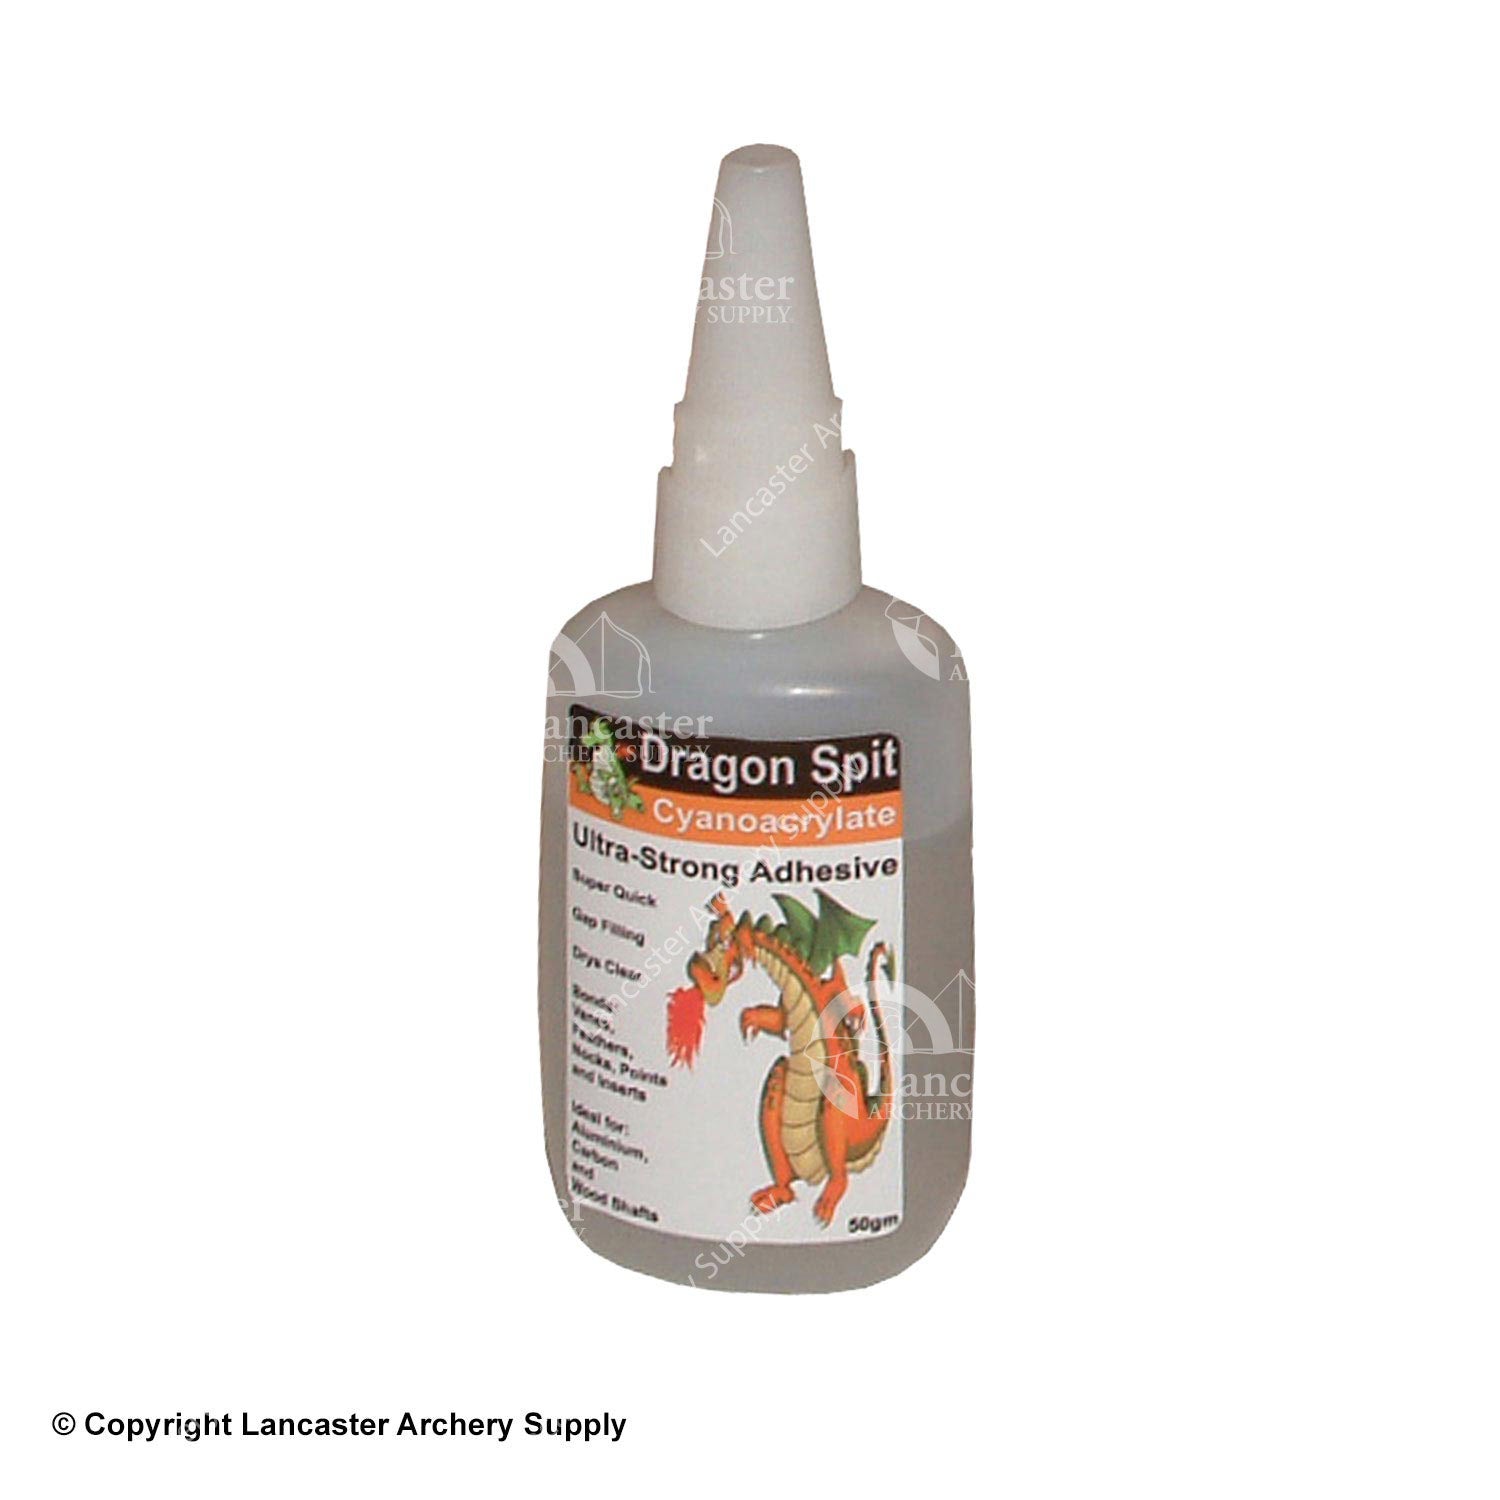 Dragon Spit Glue (50gm)